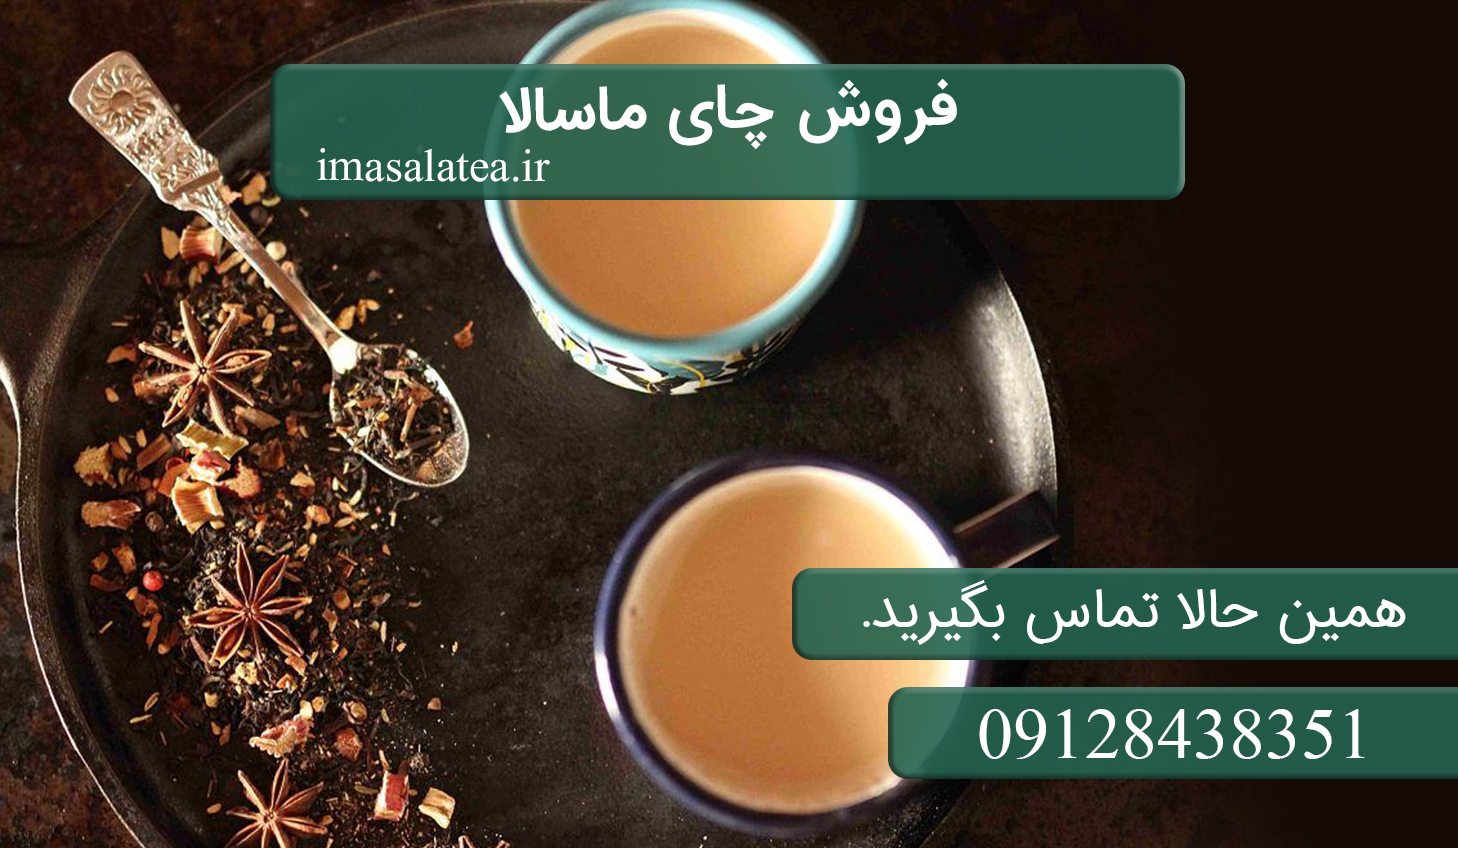 فروش چای ماسالا در اصفهان